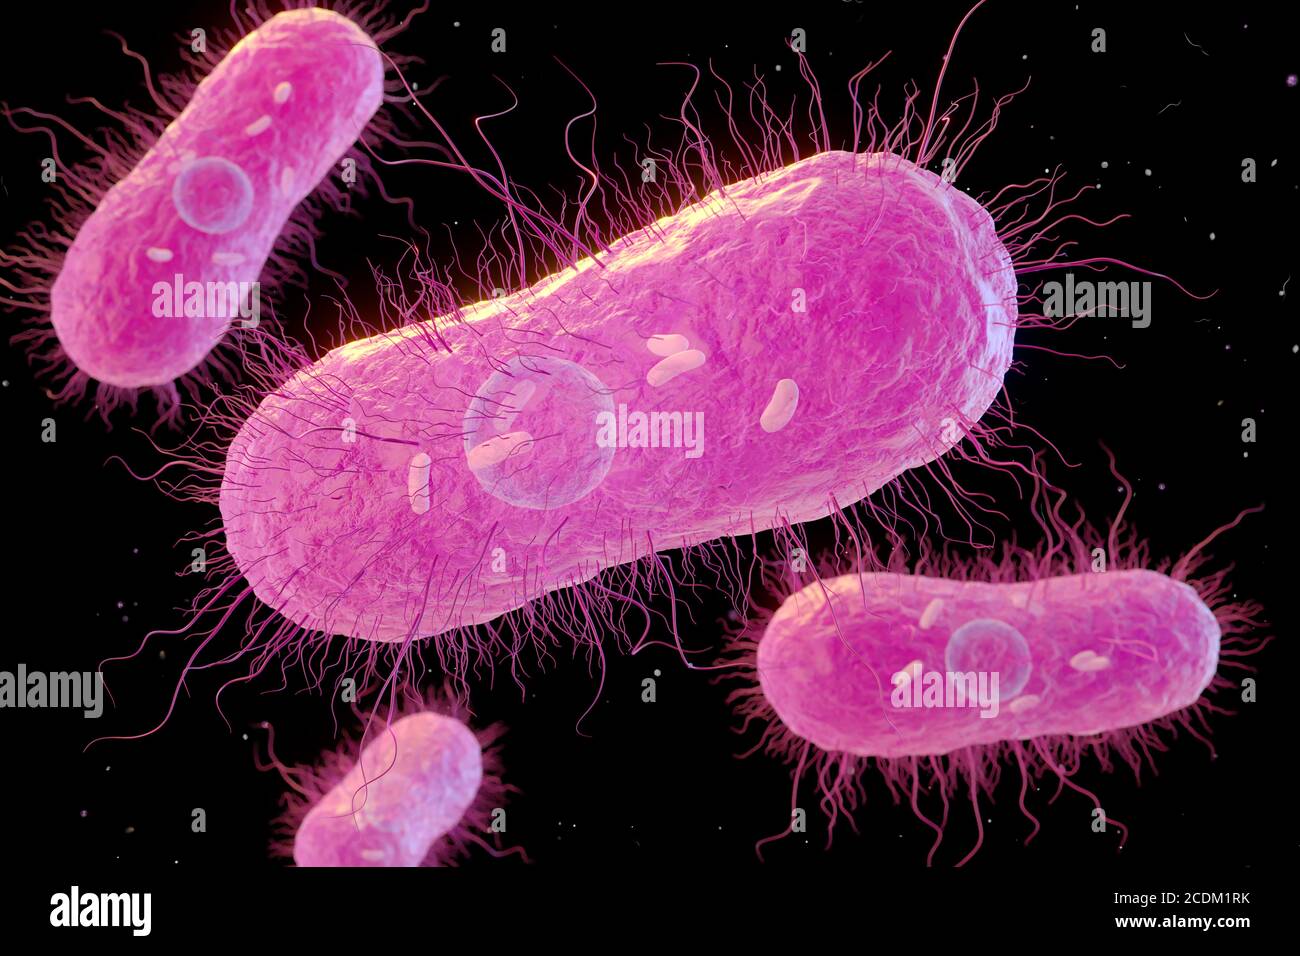 3d-Darstellung von Salmonella sp. Bakterien mit interner Struktur. Flagella, dünne fadenartige Strukturen, die von den Bakterien verwendet werden, um sich zu bewegen, sind ebenfalls zu sehen. Salmonella sp. Bakterien können Lebensmittelvergiftungen verursachen, wenn sie in kontaminierten Lebensmitteln wie rohen Eiern gegessen werden. Unter den richtigen Bedingungen können sie sich schnell vermehren. Symptome sind Bauchschmerzen, Übelkeit, Durchfall und Erbrechen. Typhus wird auch durch Salmonella sp. Bakterien verursacht. Stockfoto